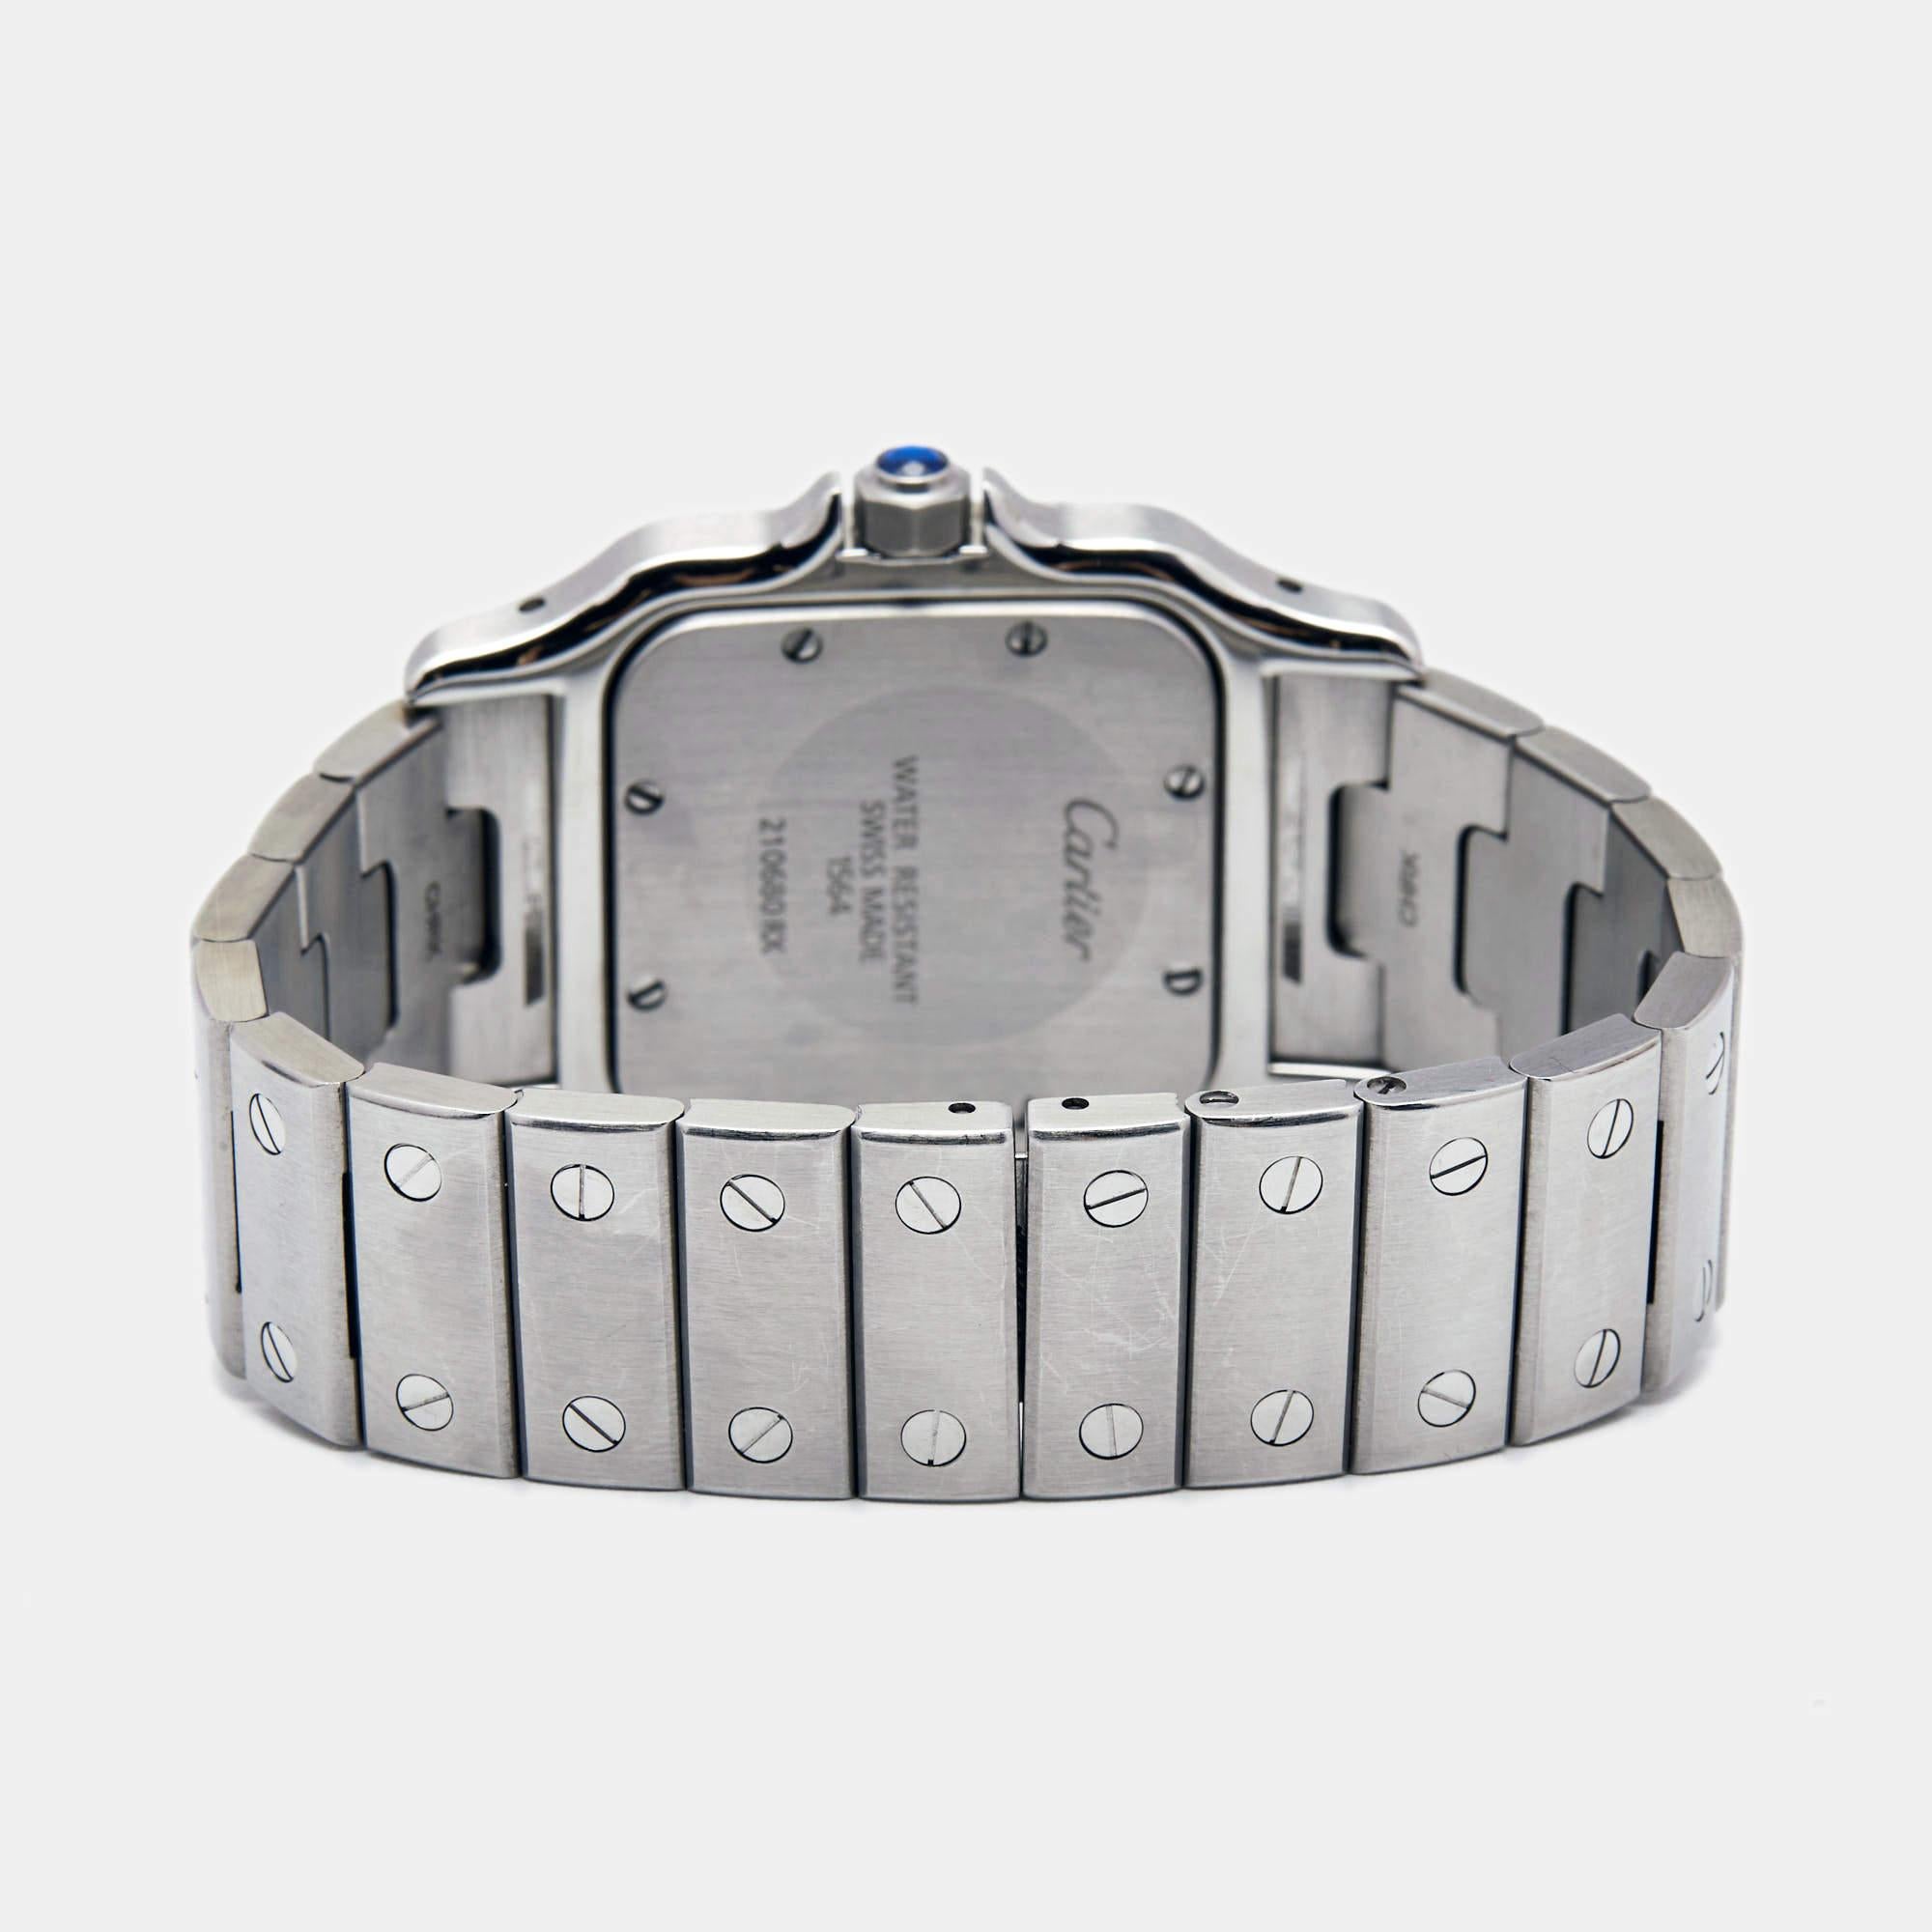 La Cartier Santos Eleg W2006006 est une montre-bracelet exquise pour femme qui allie harmonieusement élégance et fonctionnalité. Réalisés avec précision, son boîtier et son bracelet en acier inoxydable dégagent un charme intemporel. Le cadran carré